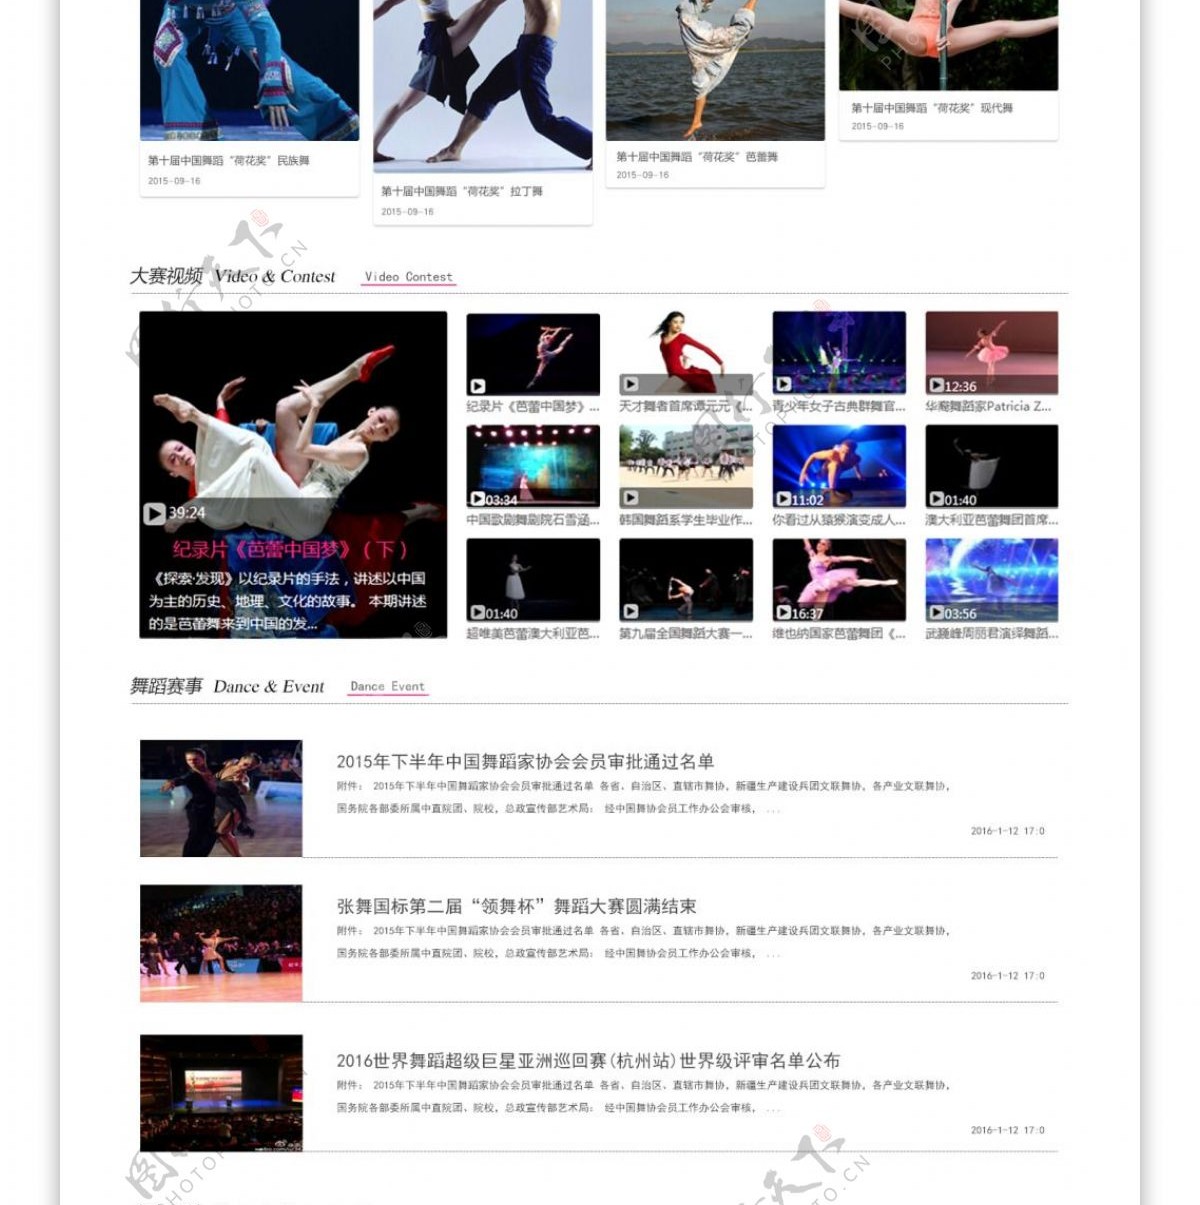 世界舞蹈艺术教育联盟协会苏州思霖网络